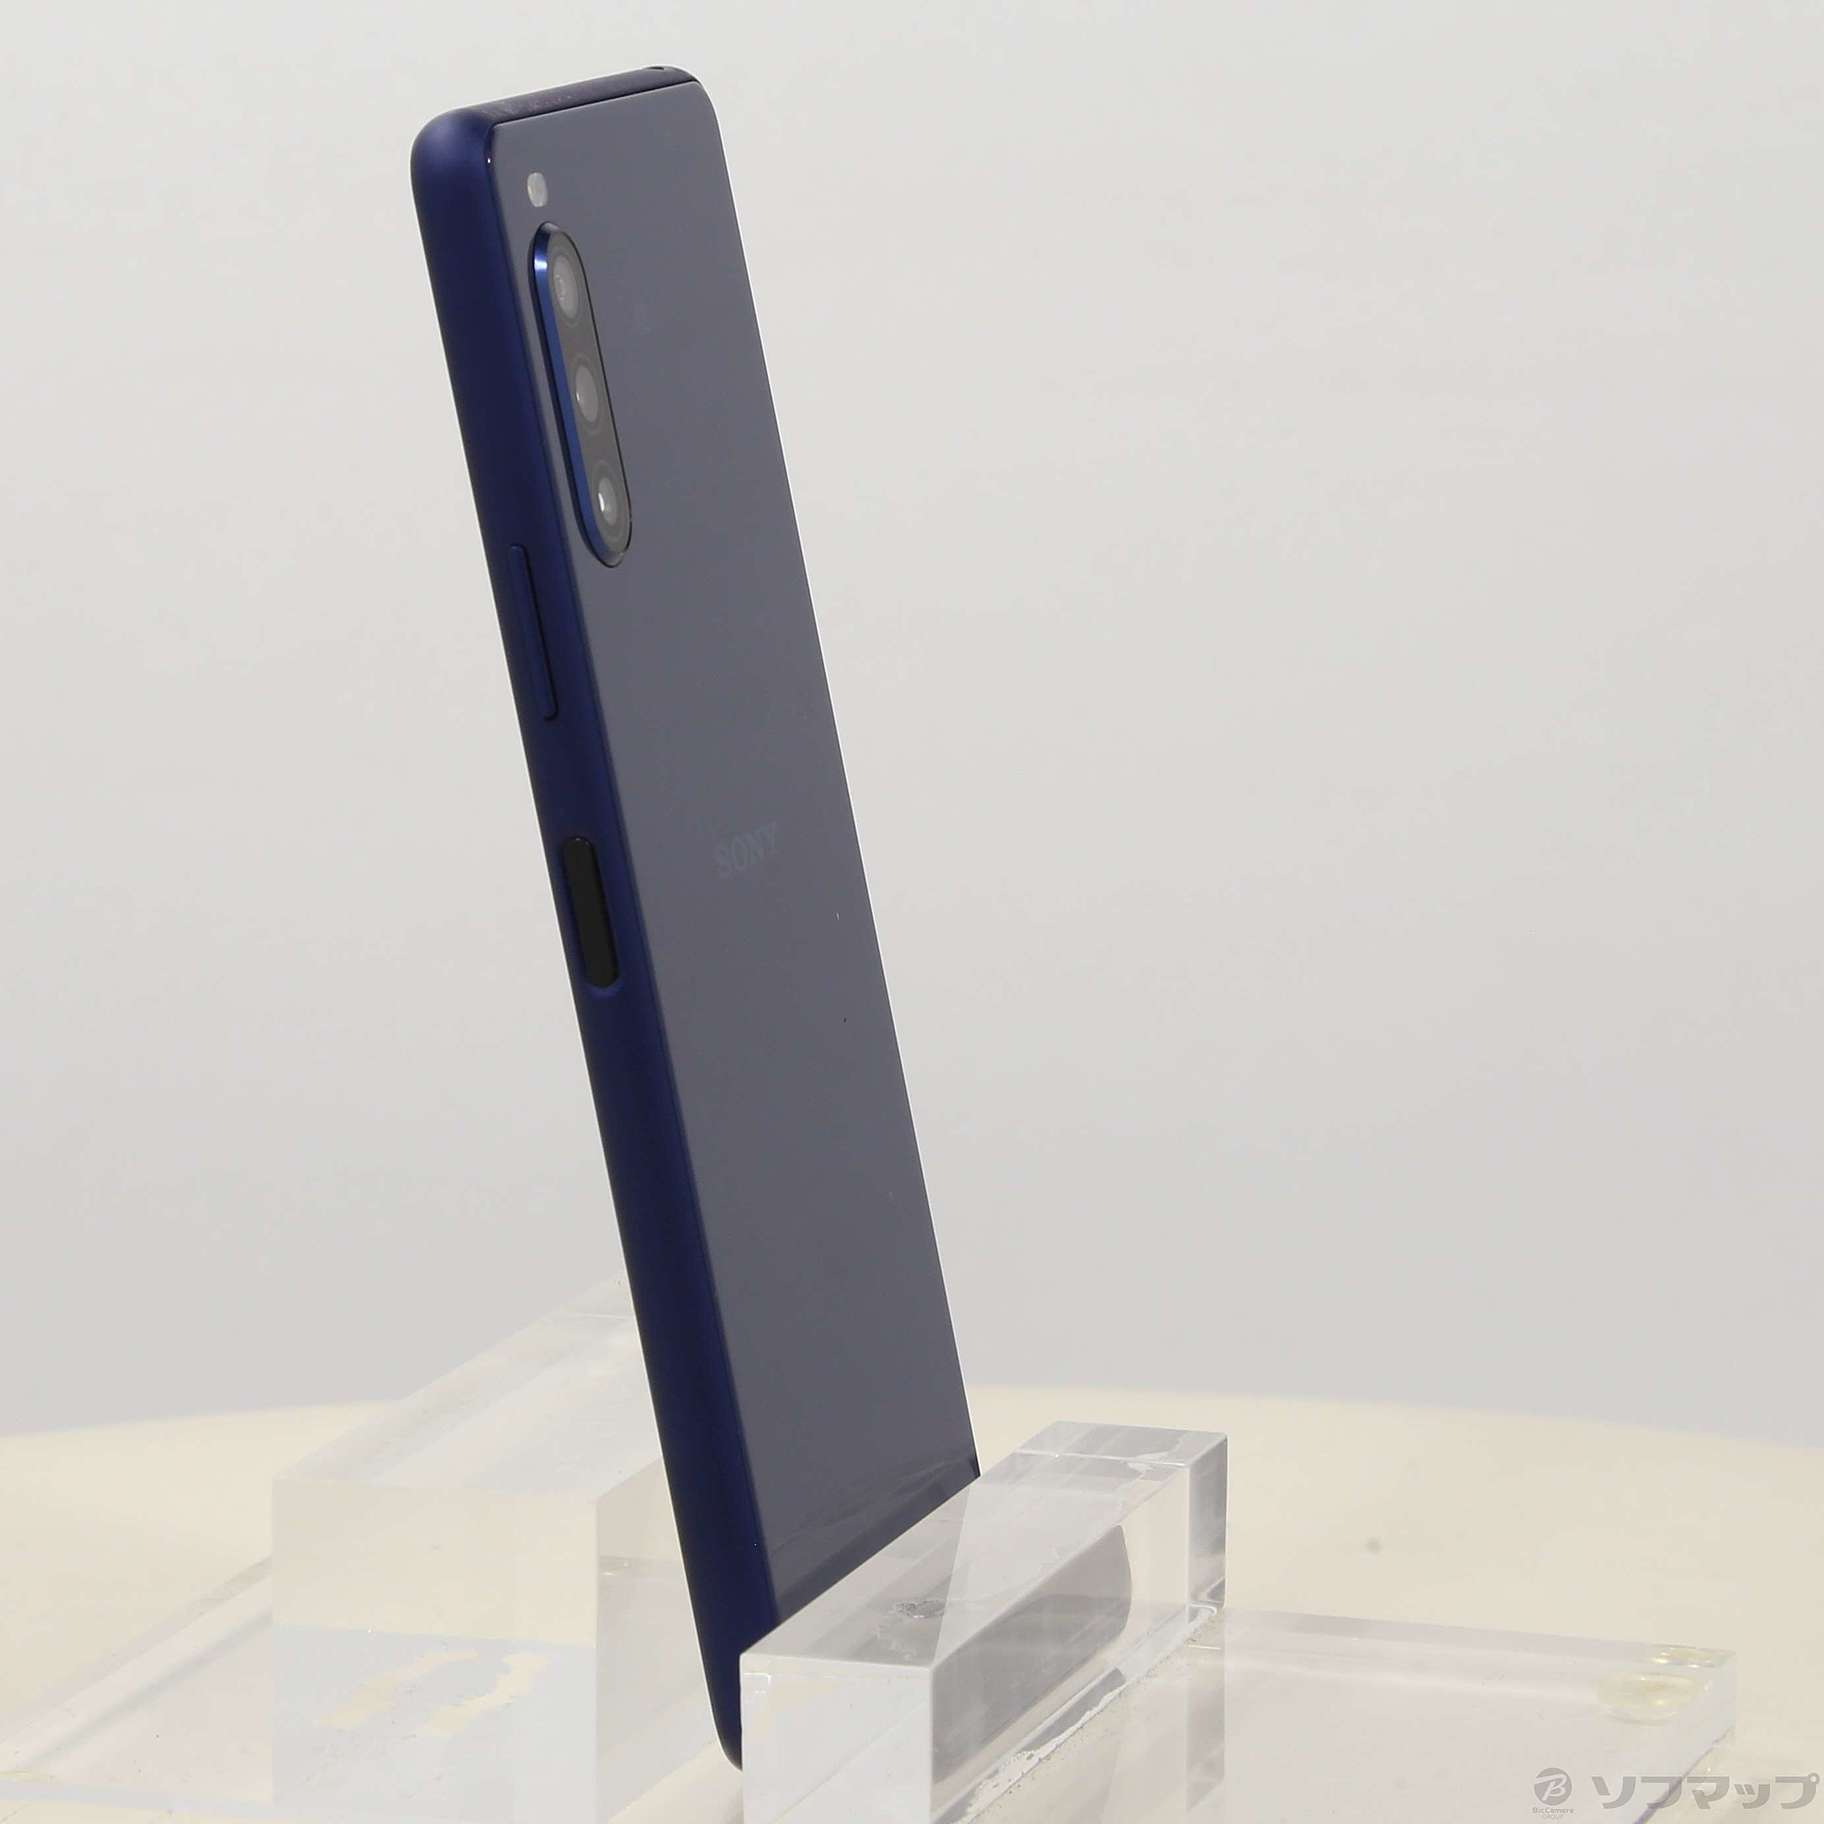 Xperia 10 II 64GB ブルー SOSAP4 Y!mobile